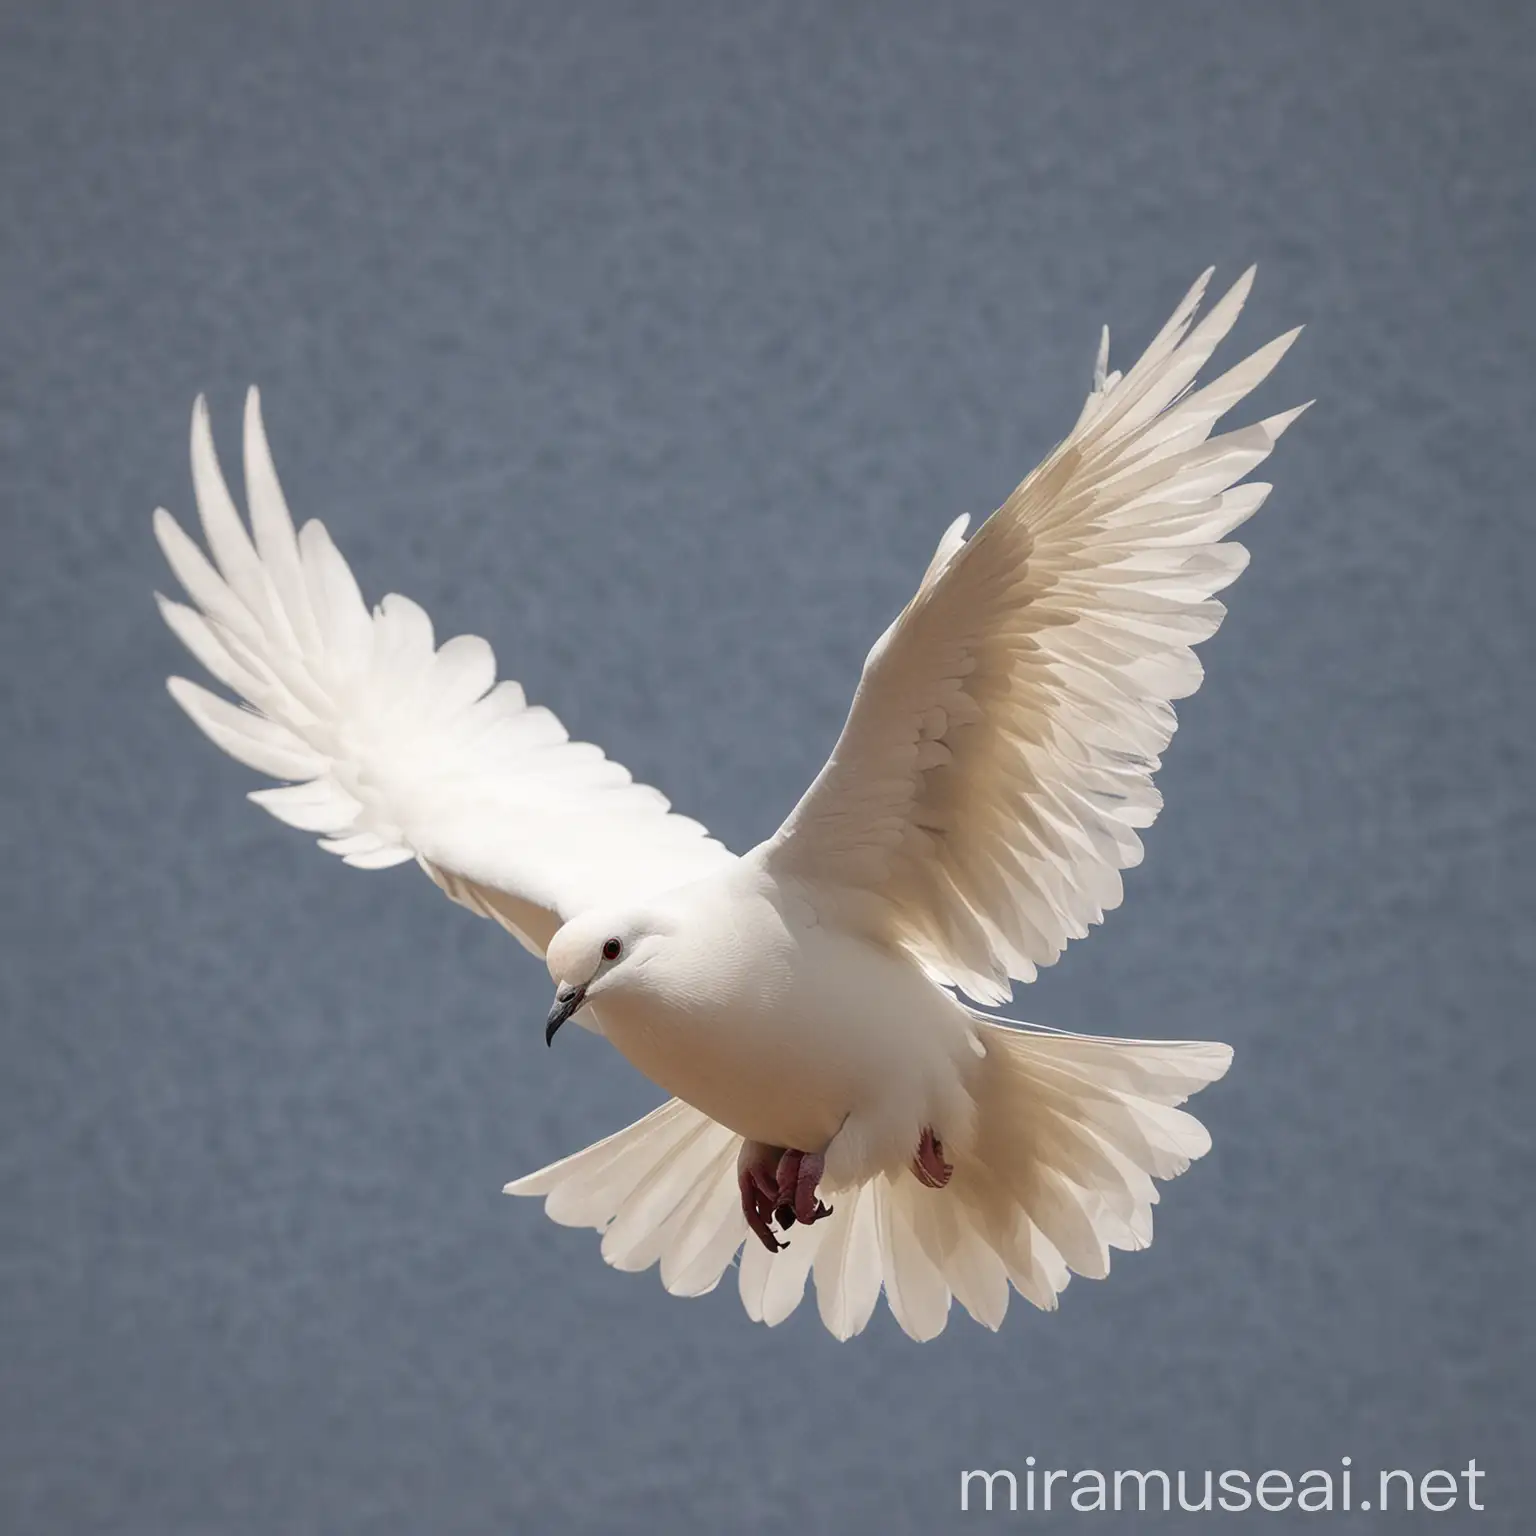 Graceful White Dove Soaring in Flight